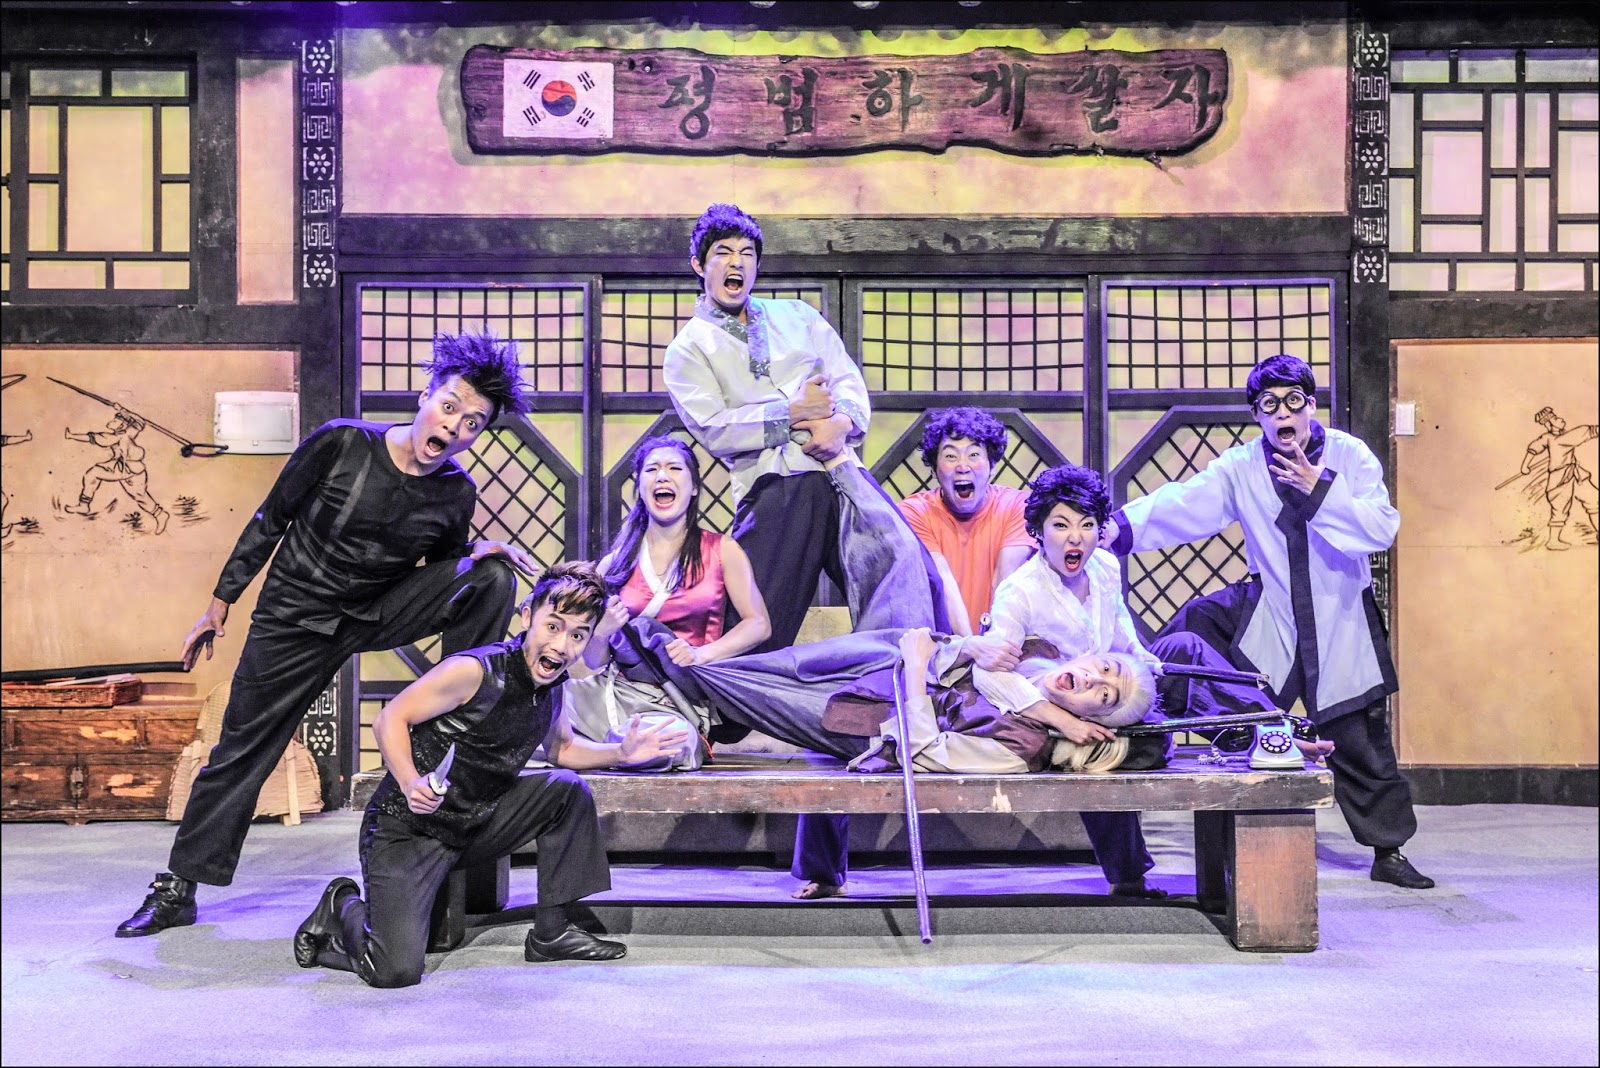 JUMP show Seoul South Korea comedy martial art show